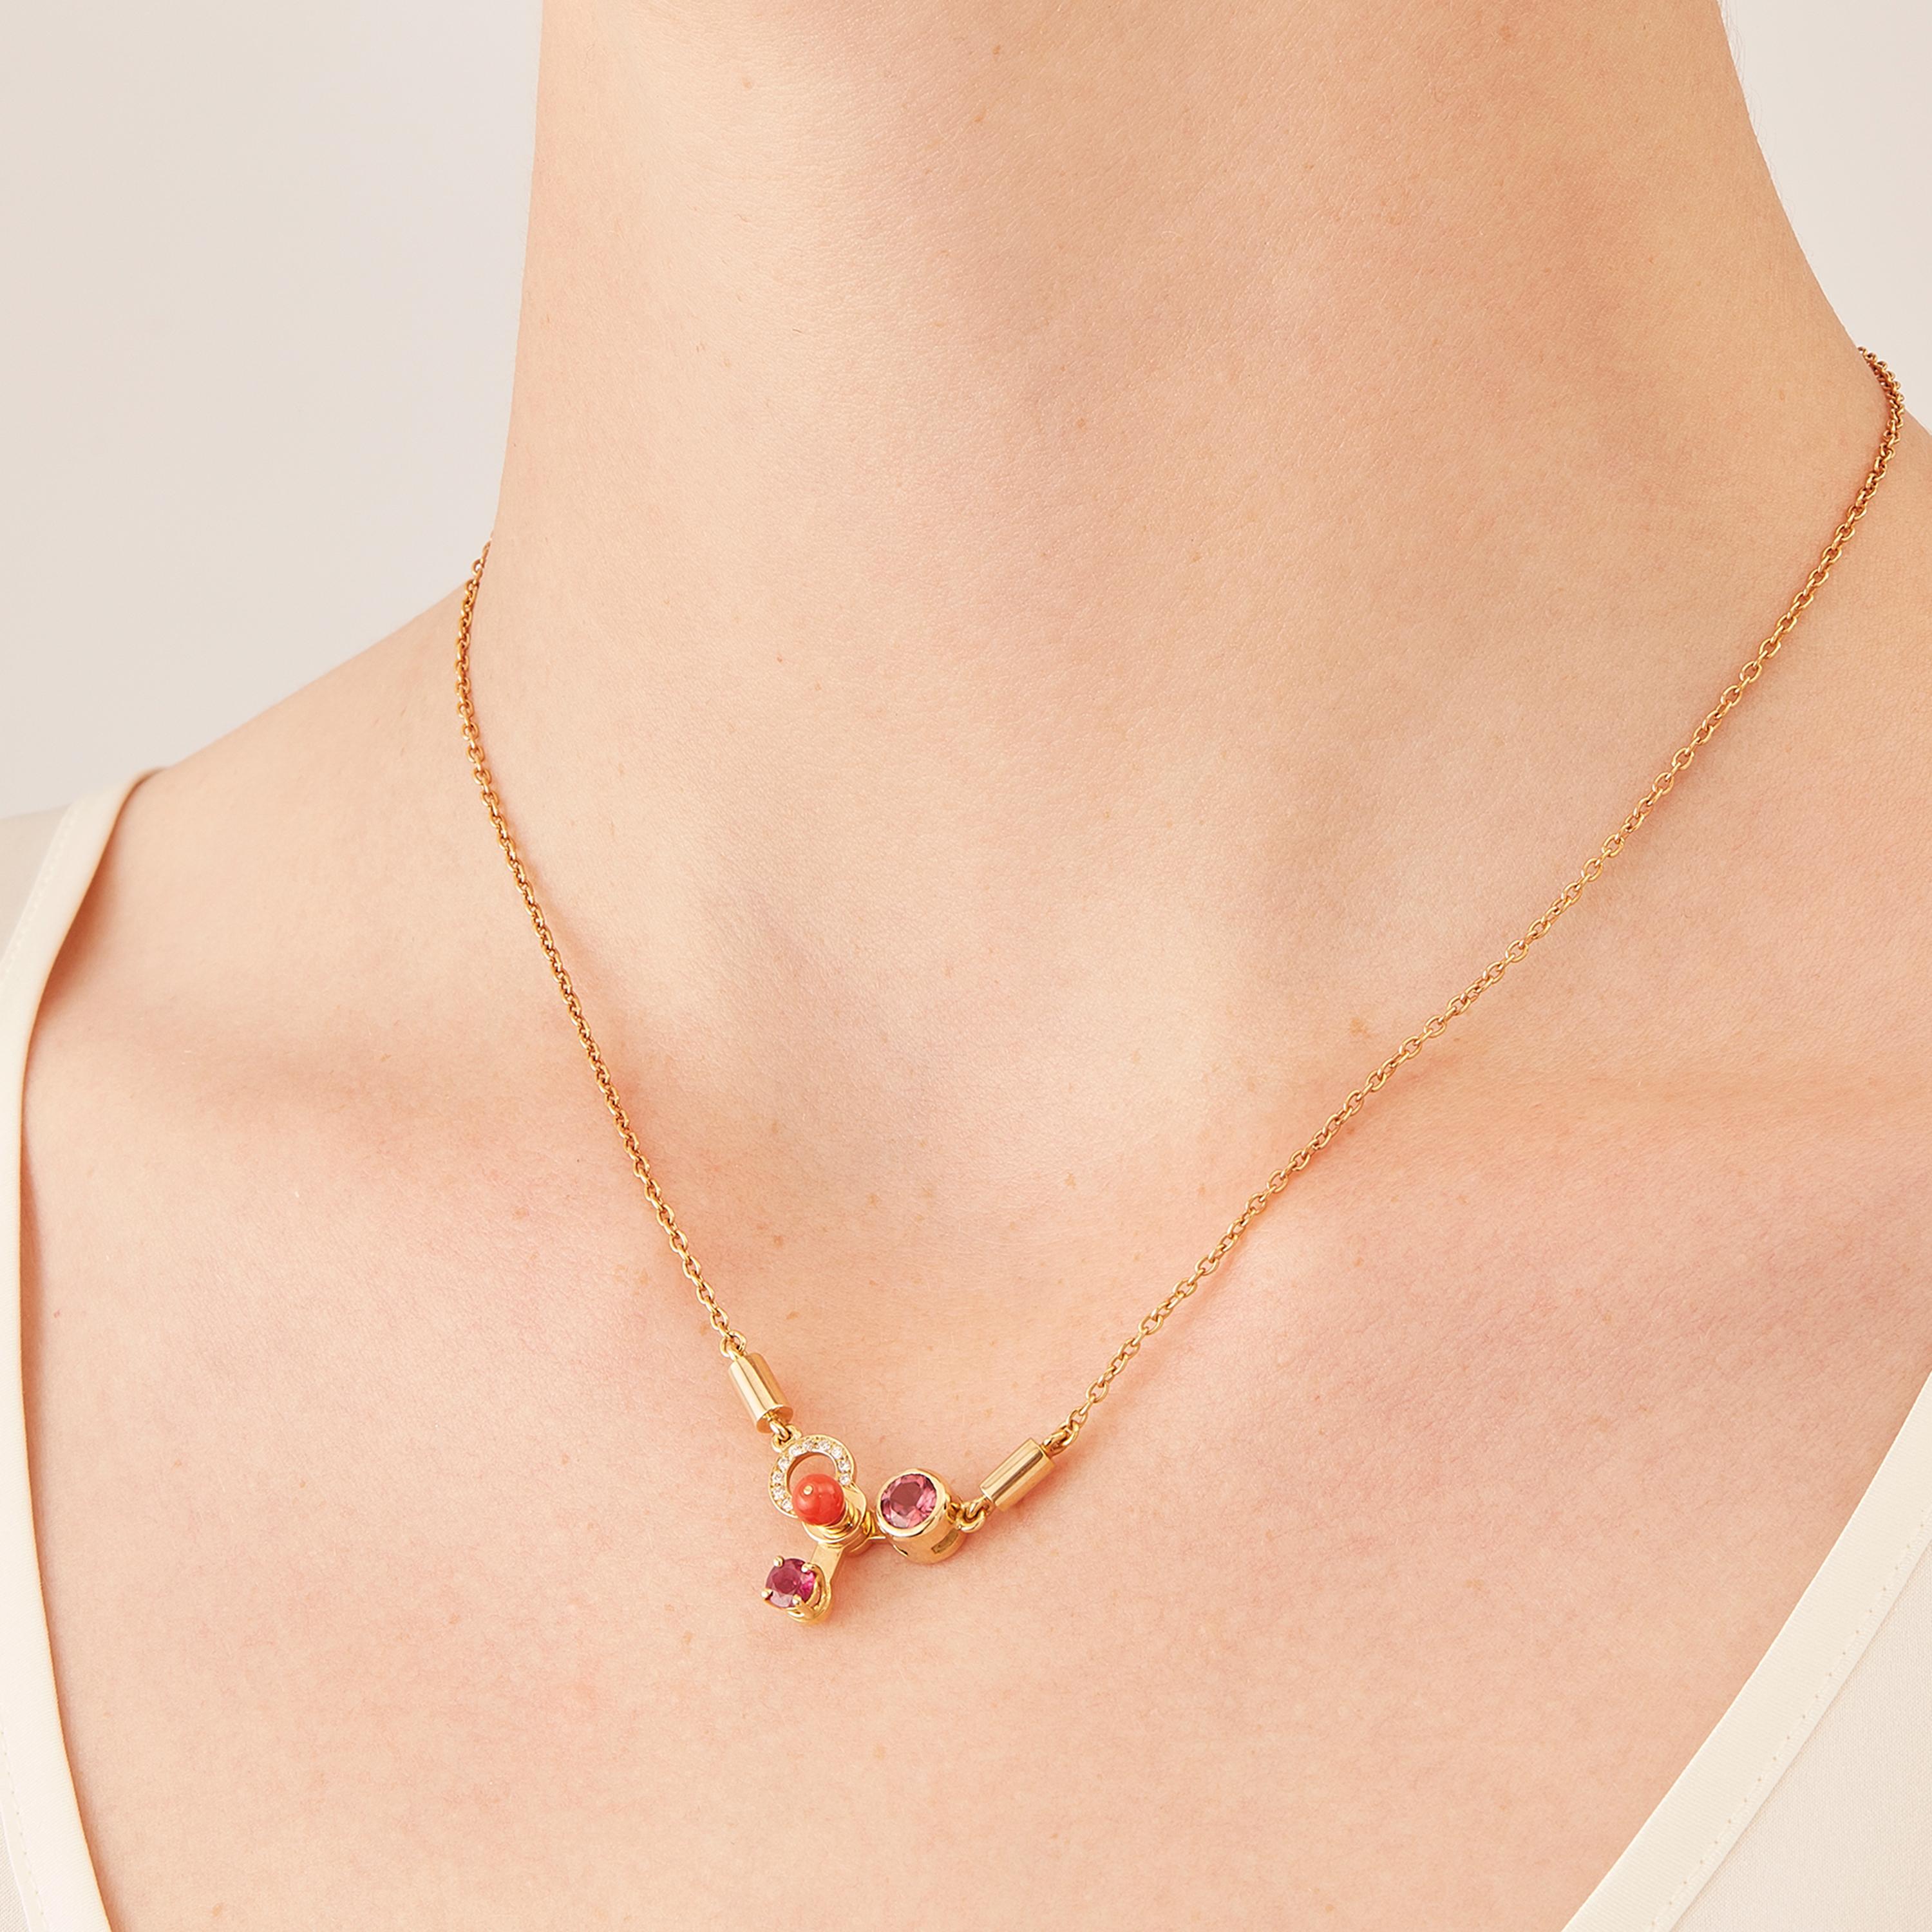 Mobilisé à la main dans l'atelier milanais de Nathalie Jean, le collier pendentif Microcosmos en or rosé 18 carats, couleur chaude et sophistiquée proche de l'or jaune, est conçu comme un jeu, une construction ou un mobile aérien sophistiqué. Des